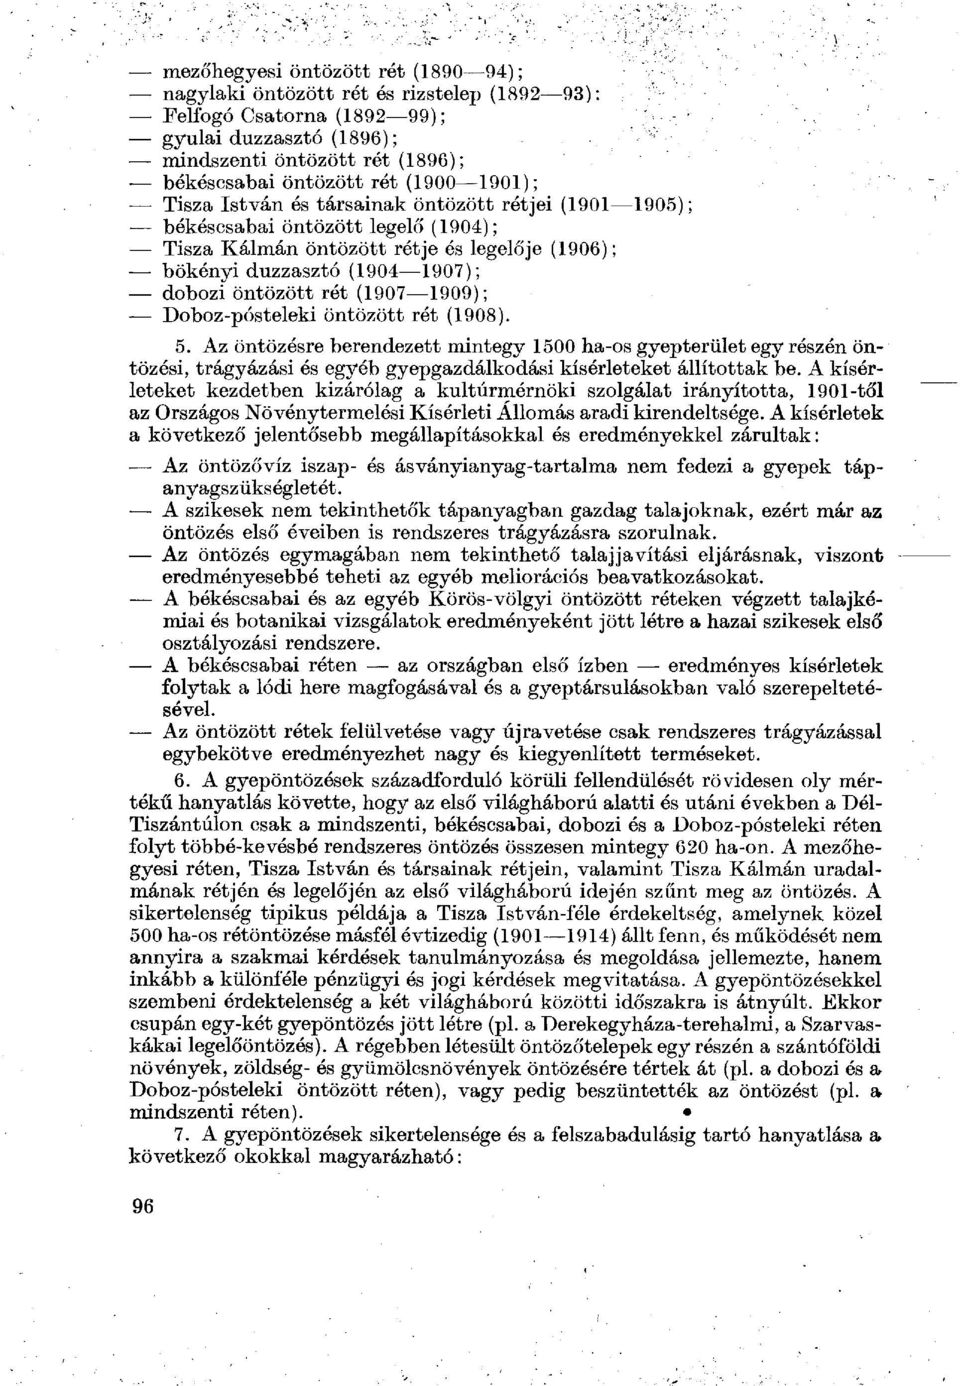 (1907 1909); Doboz-pósteleki öntözött rét (1908). 5. Az öntözésre berendezett mintegy 1500 ha-os gyepterület egy részén öntözési, trágyázási és egyéb gyepgazdálkodási kísérleteket állítottak be.